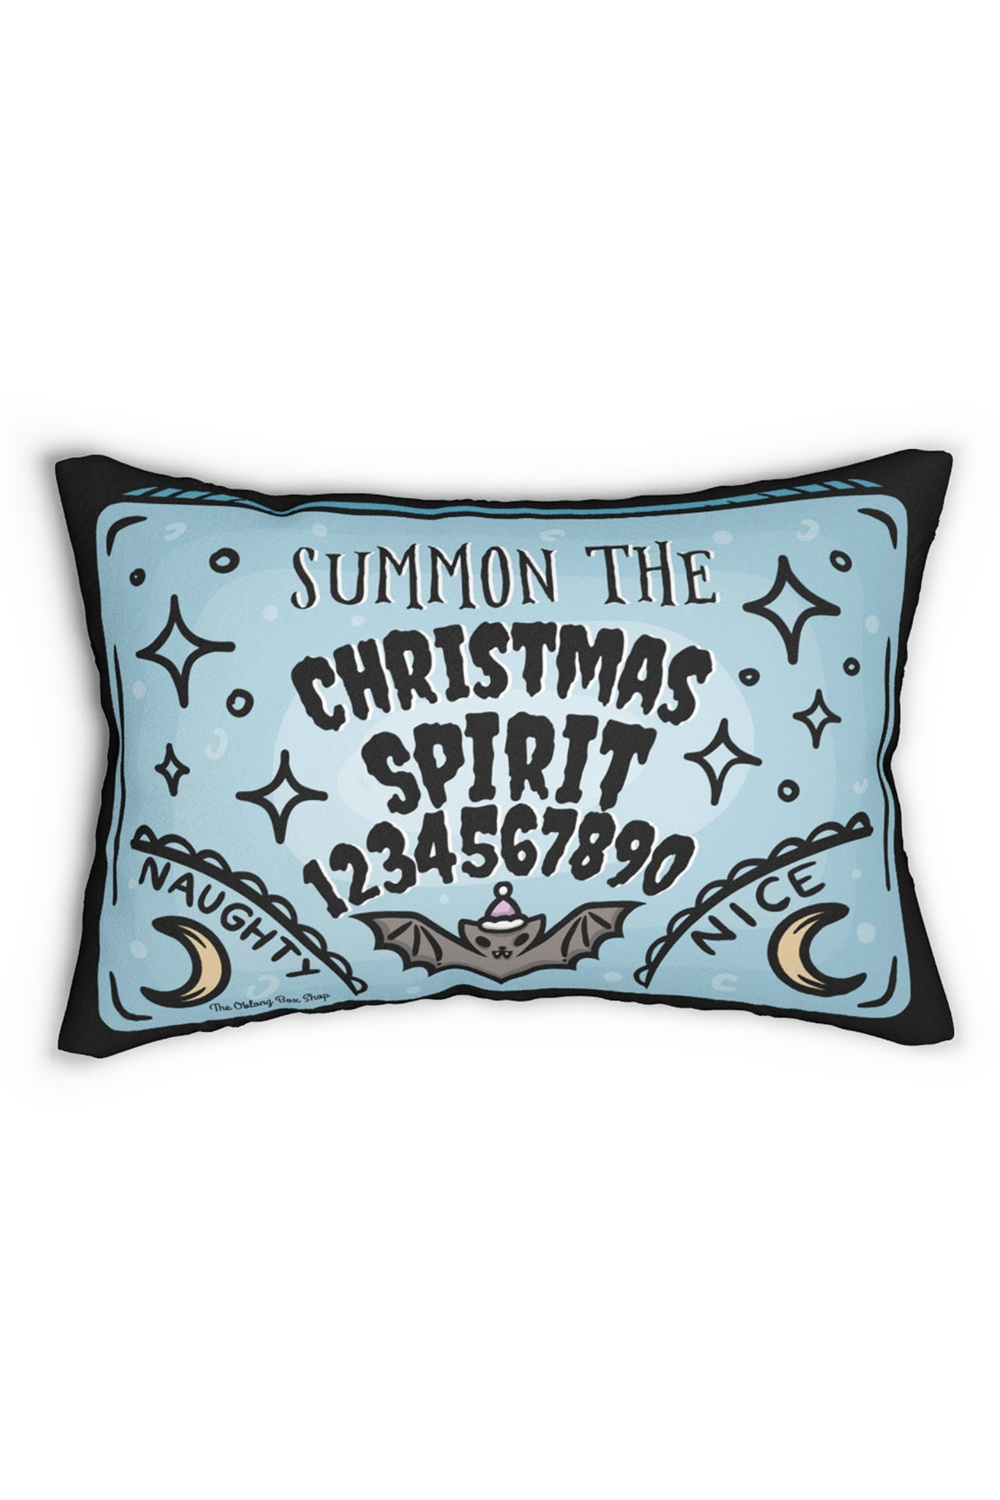 Summon The Christmas Spirit Throw Pillow